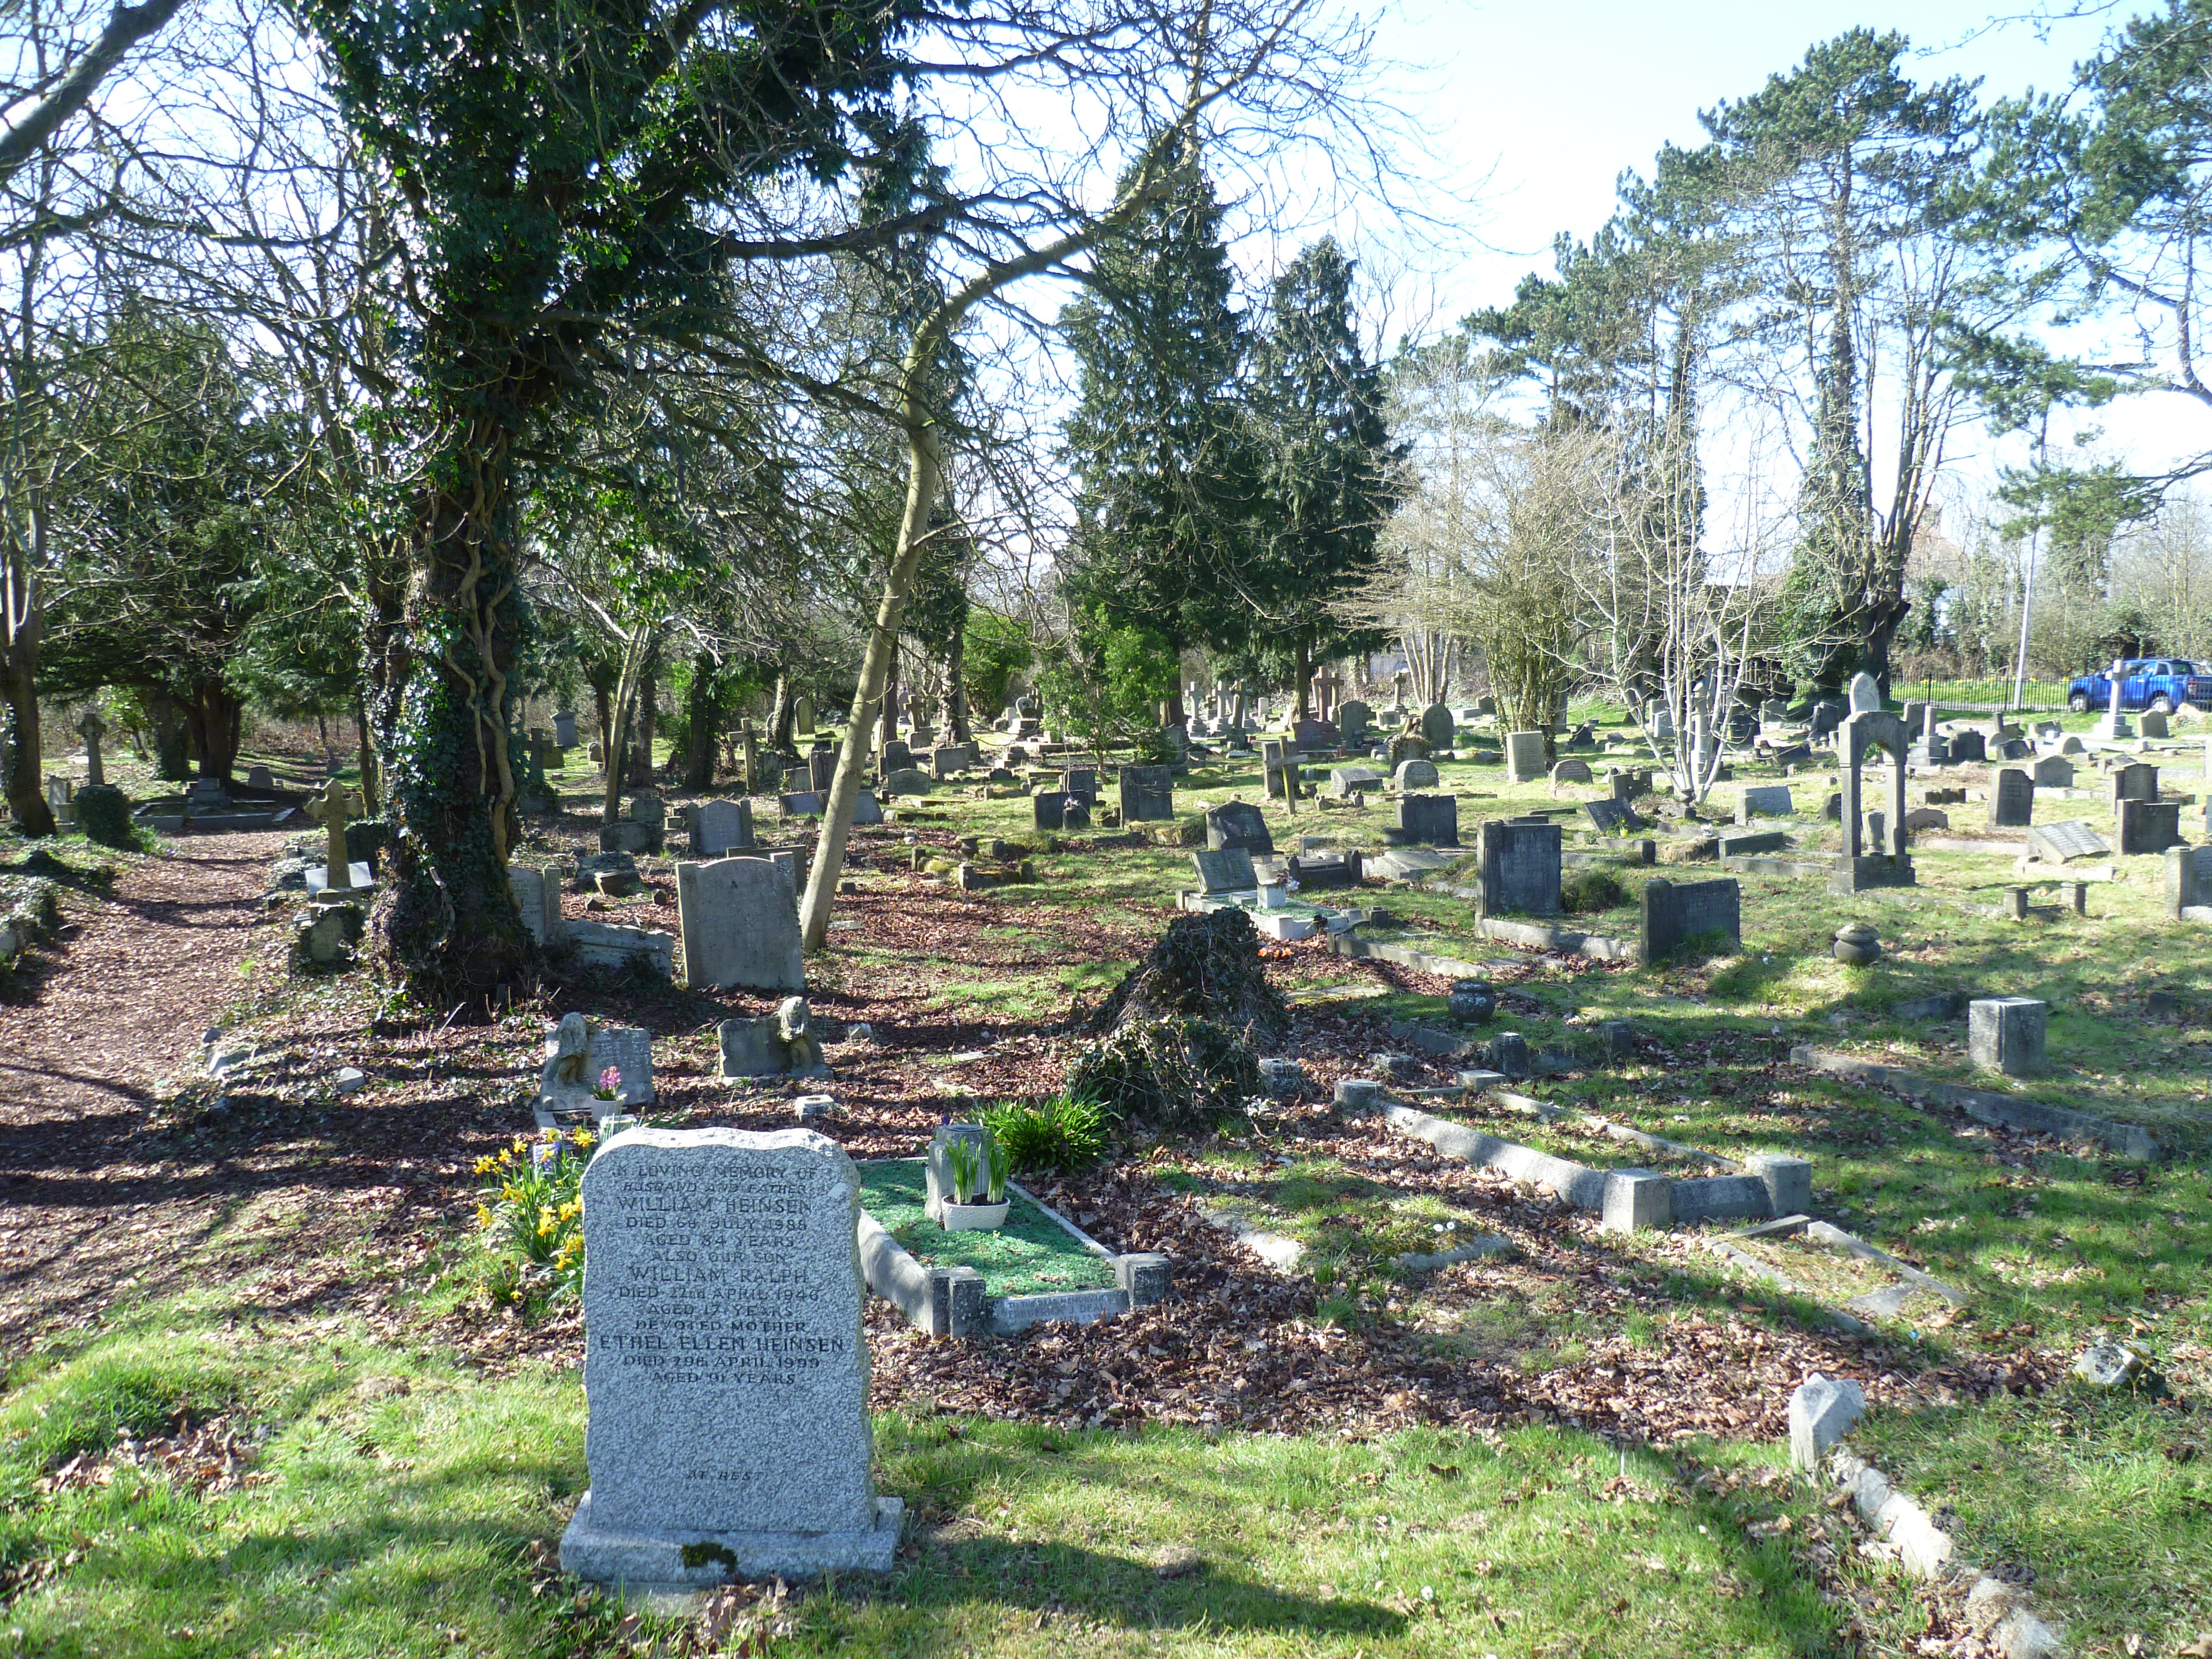 Mutton Lane Cemetery